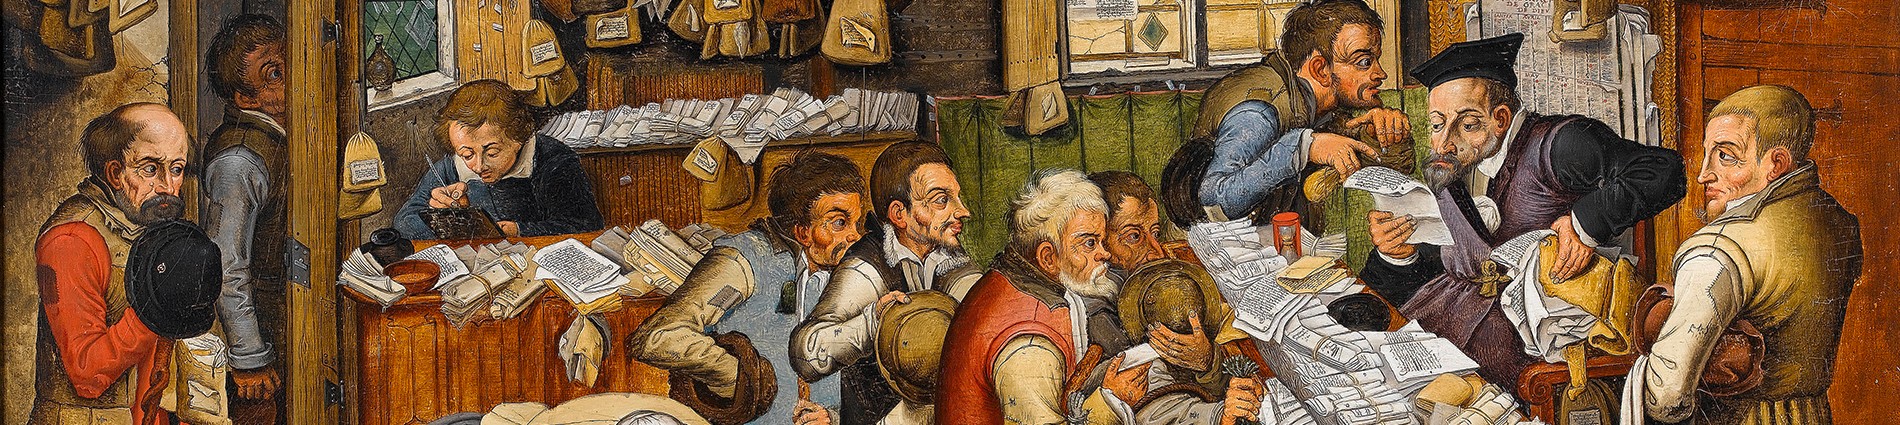 Uitsnede uit Brueghel de Jonge De belastingontvanger